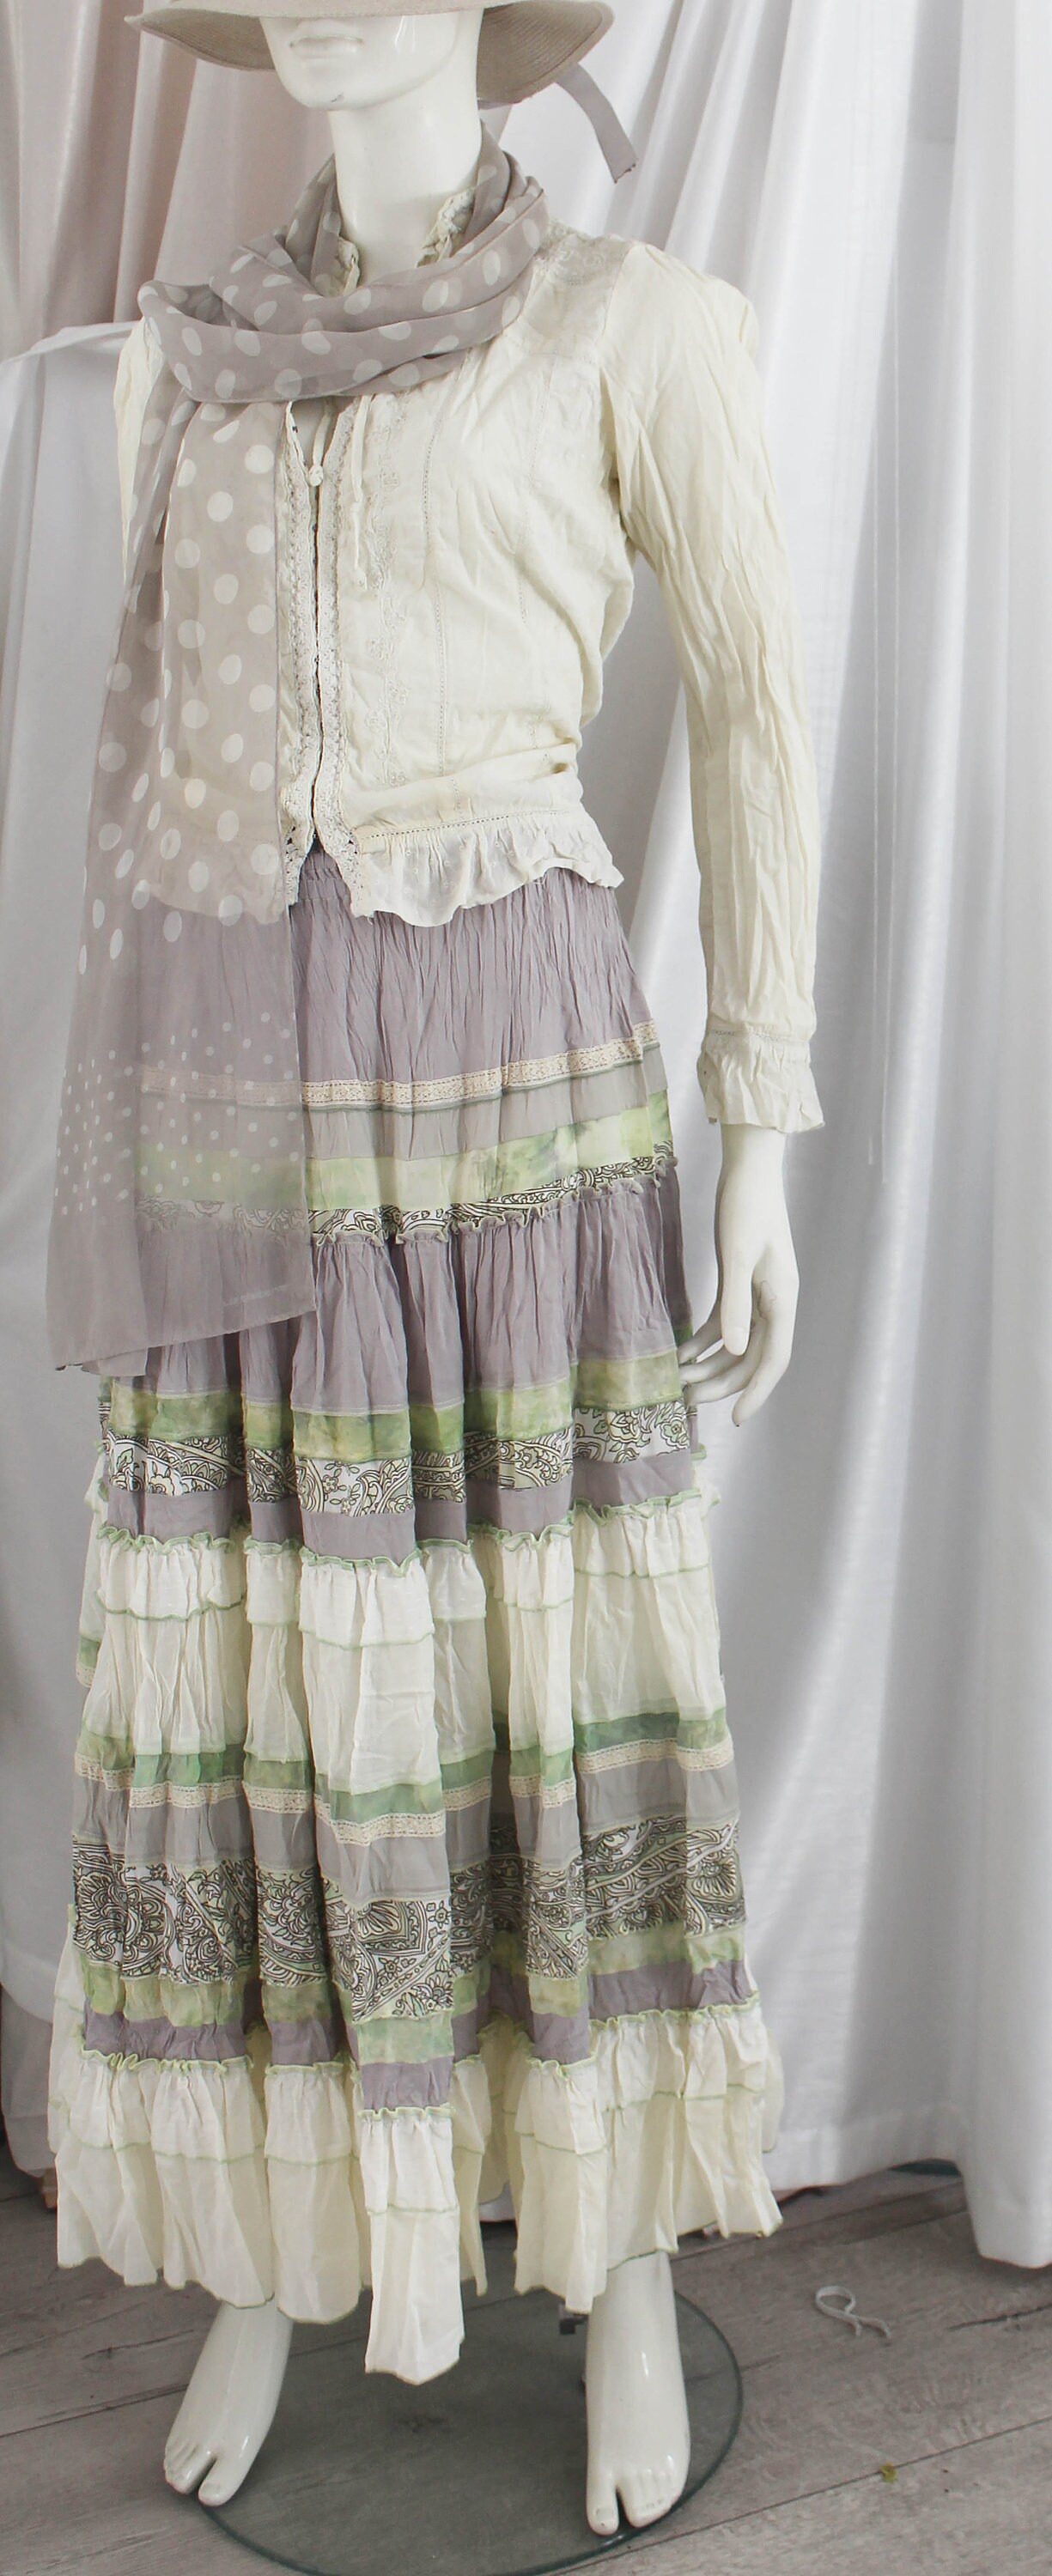 White Rose. Romantic Feminine Maxi Skirt of Light Green Color. - Etsy